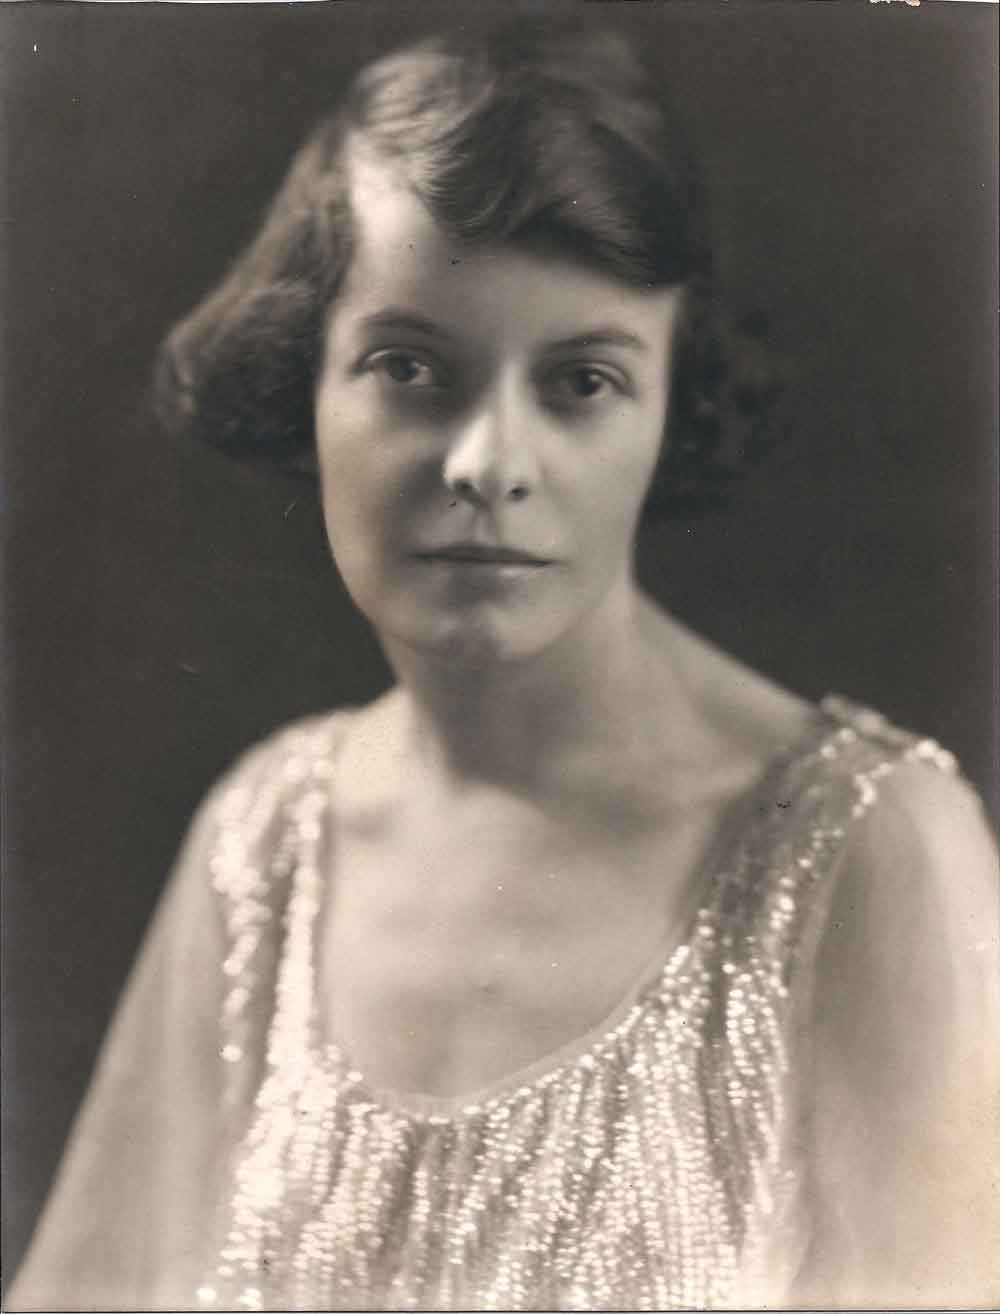 (HTC.2010.8.35) - Ethelyn Hightower, c. 1920s